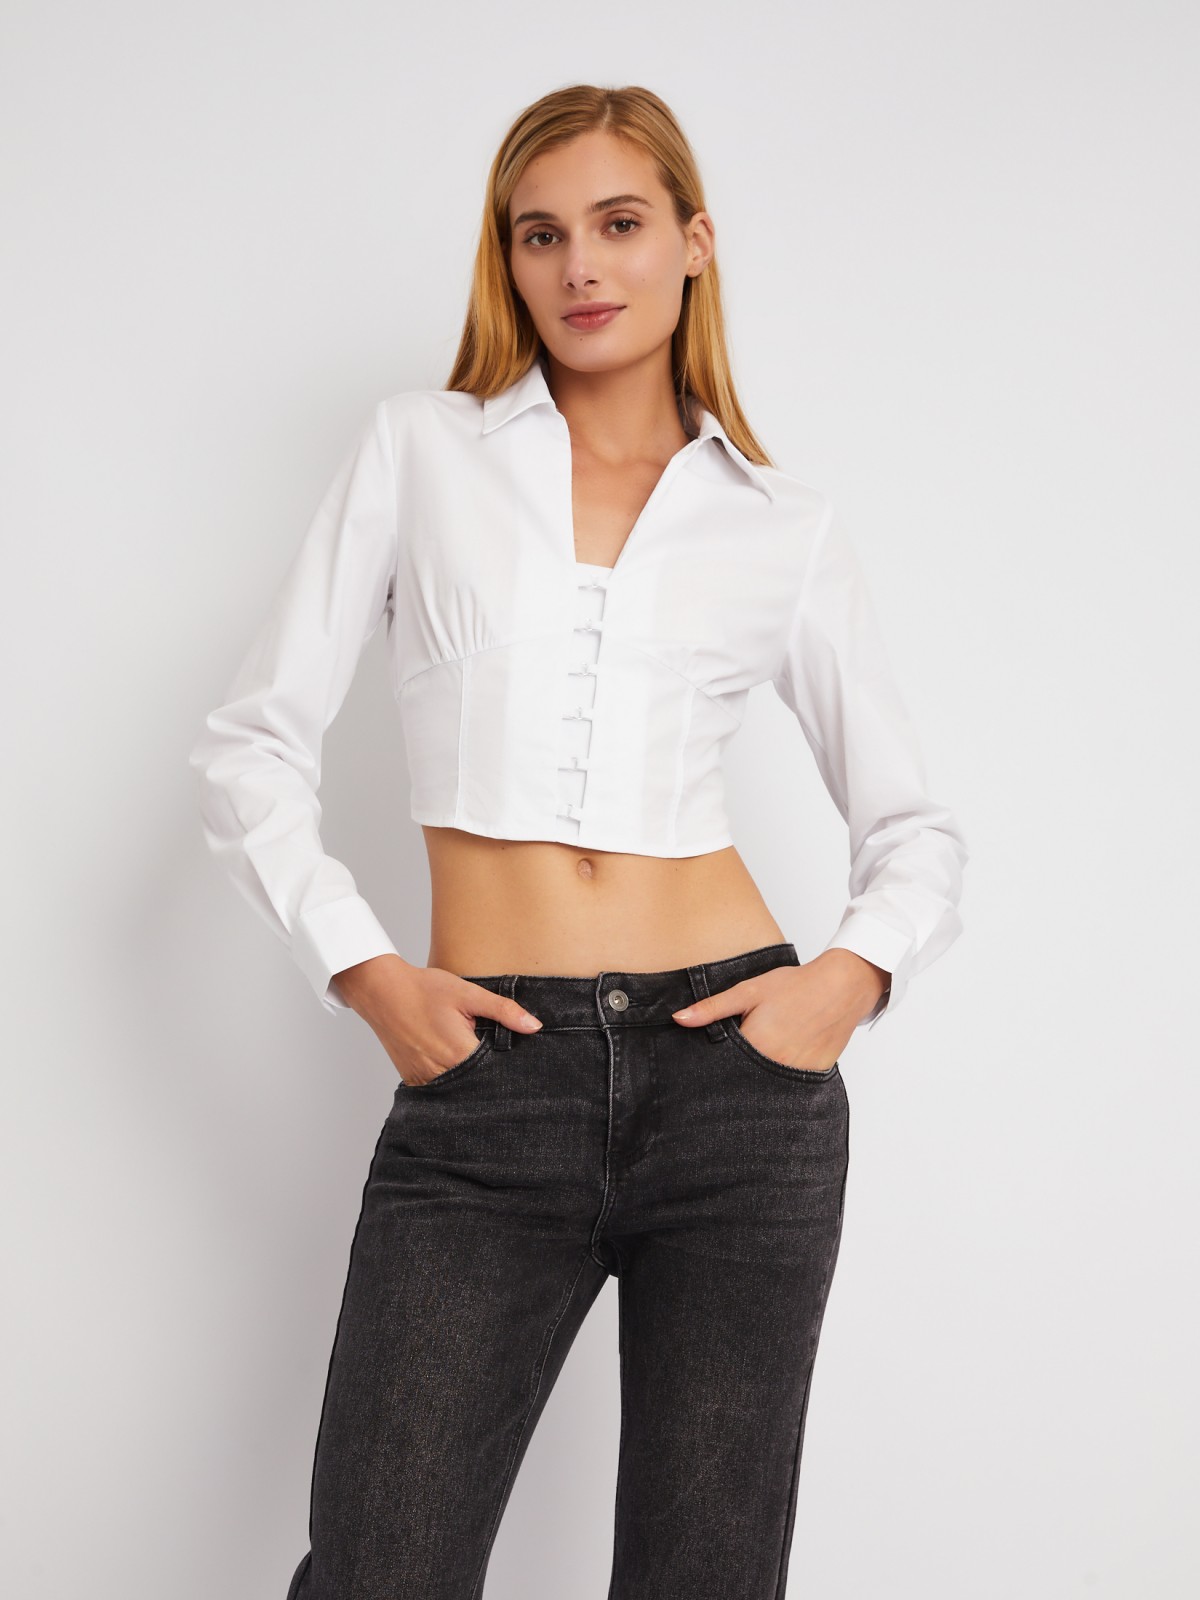 Укороченный топ-рубашка с имитацией корсета zolla 024111159271, цвет белый, размер XS - фото 3